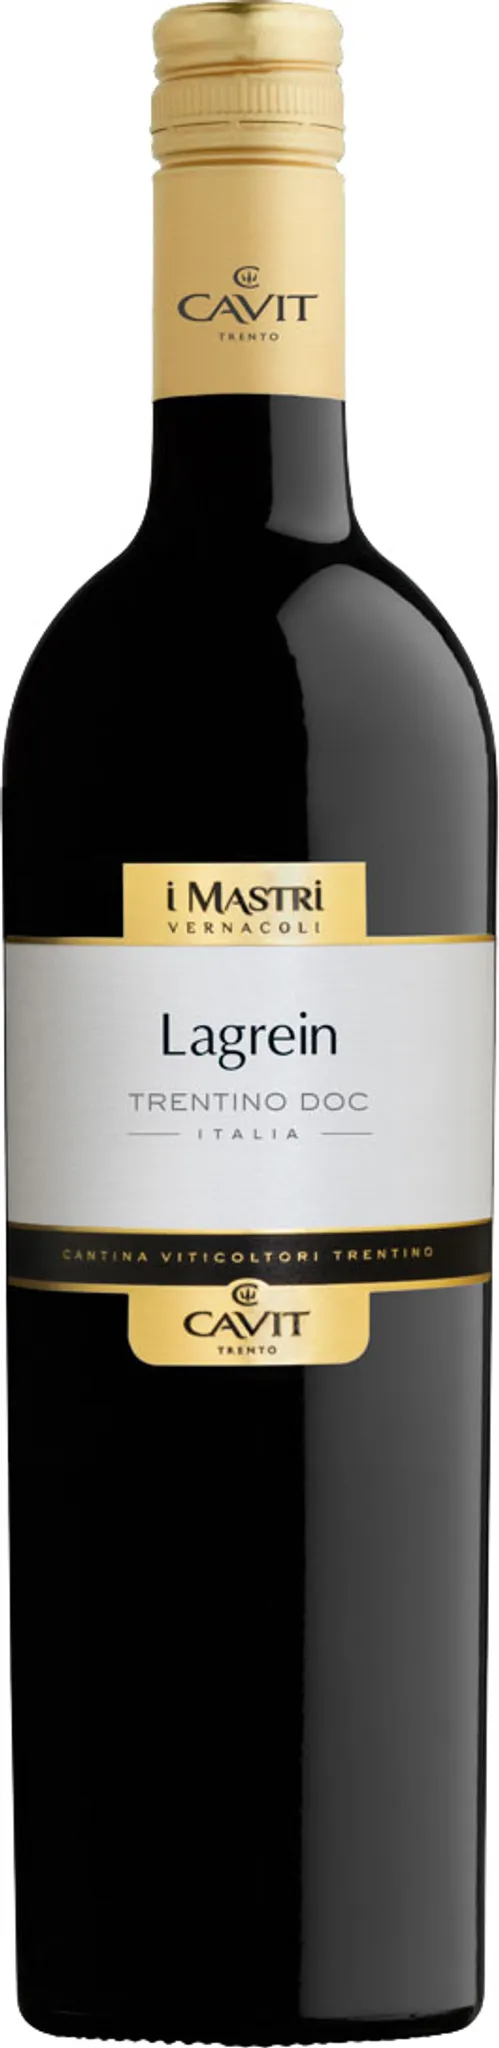 Lagrein Trentino DOC Mastri Vernacoli trocken Trentin Rotwein Cavit